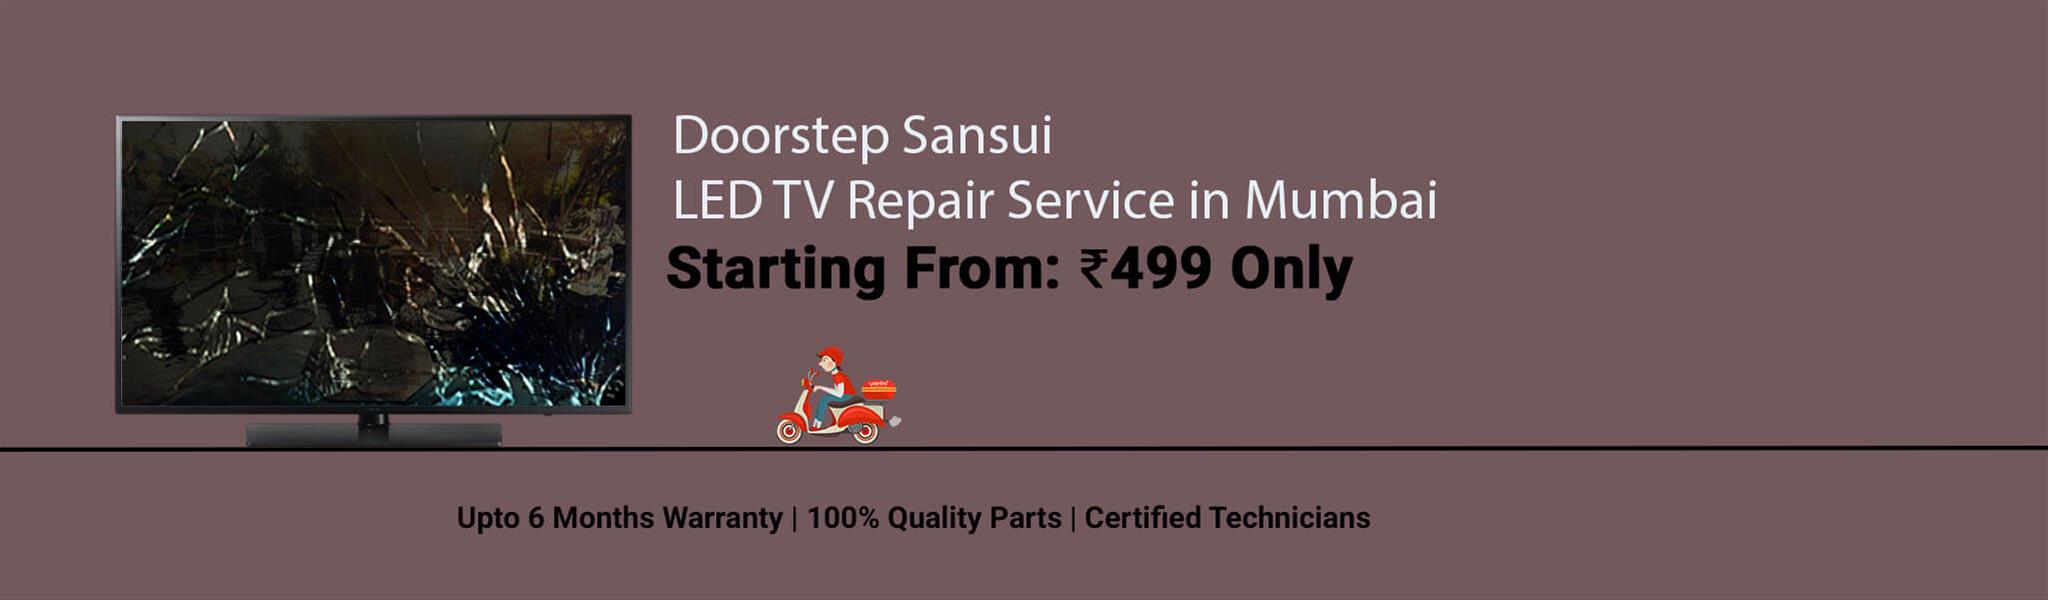 sansui-tv-repair-in-mumbai.jpg